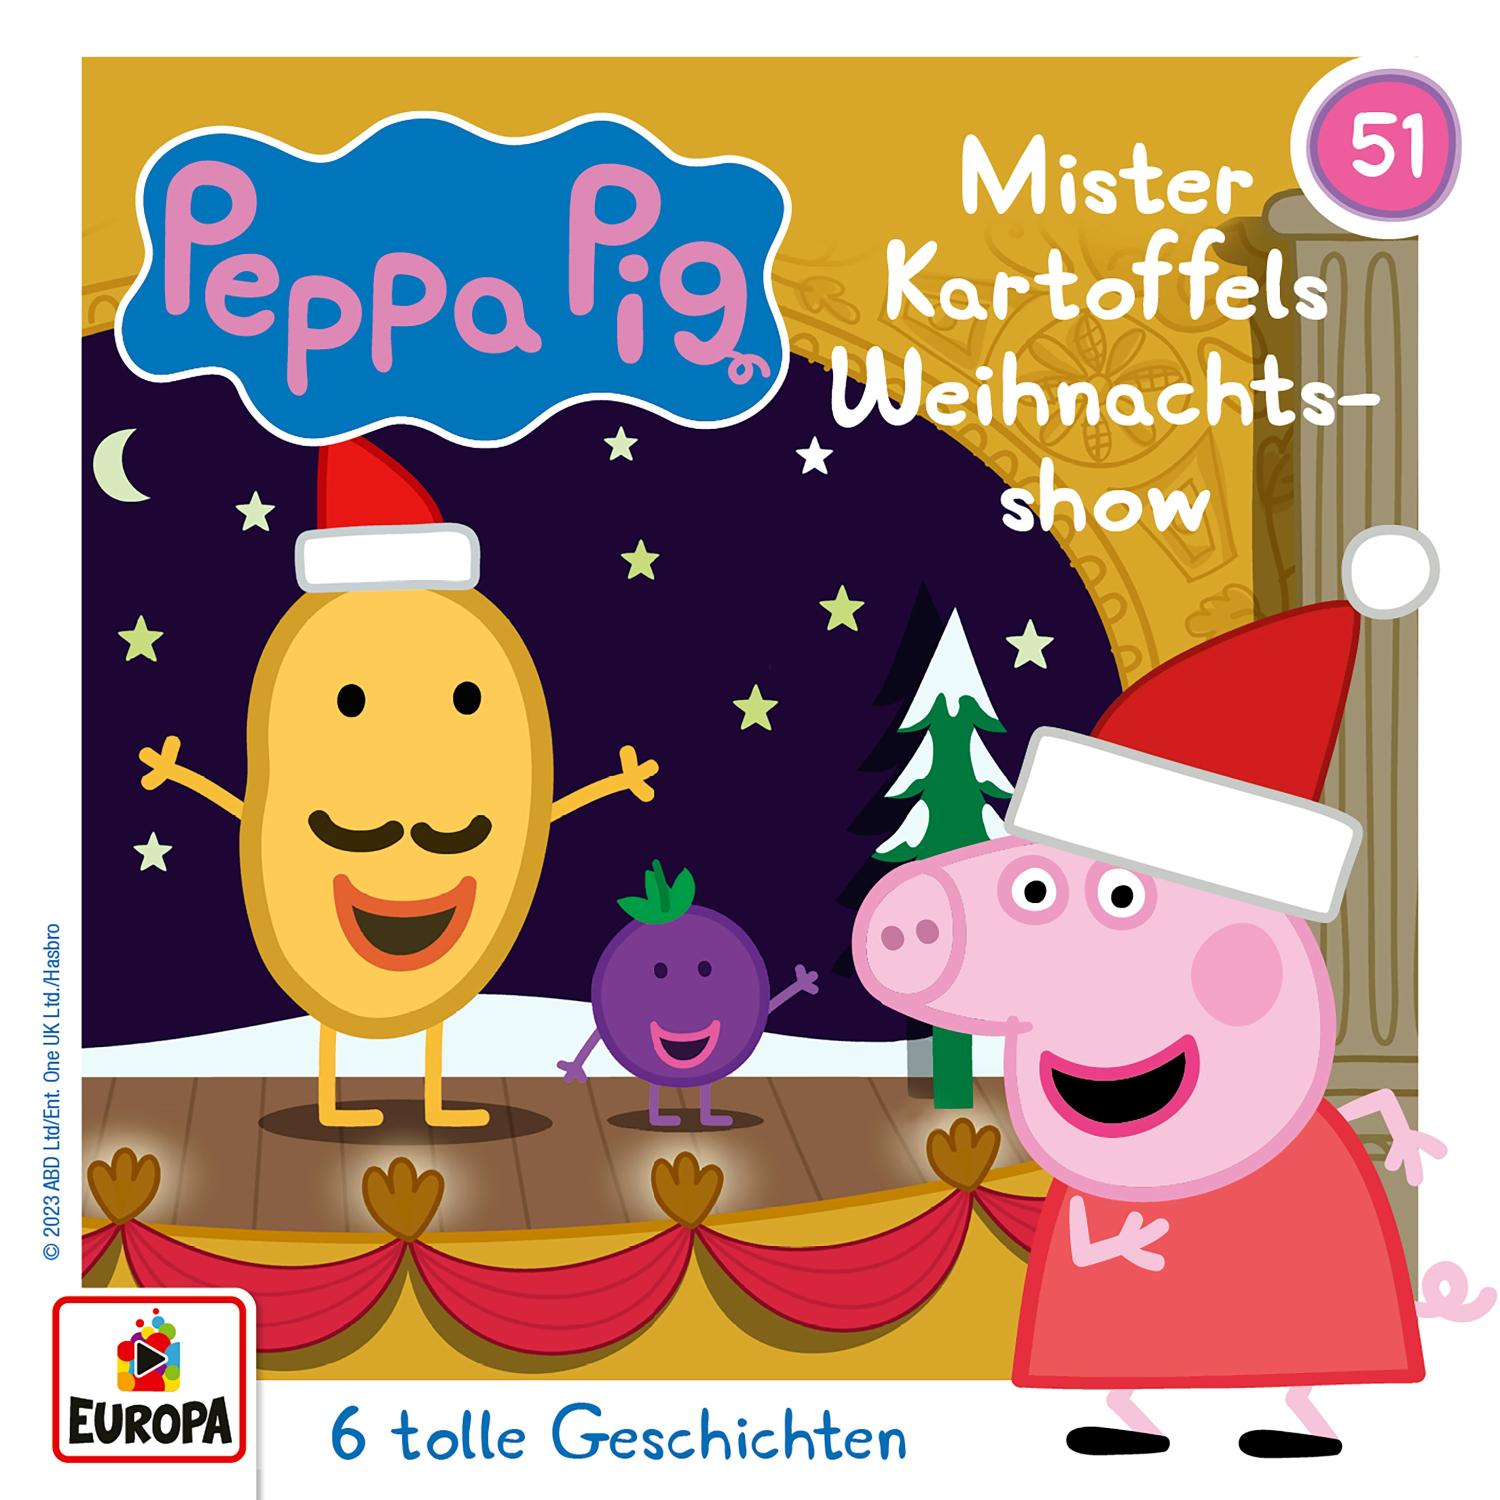 Peppa Pig Hörspiele - Mister Kartoffels Weihnachtsshow